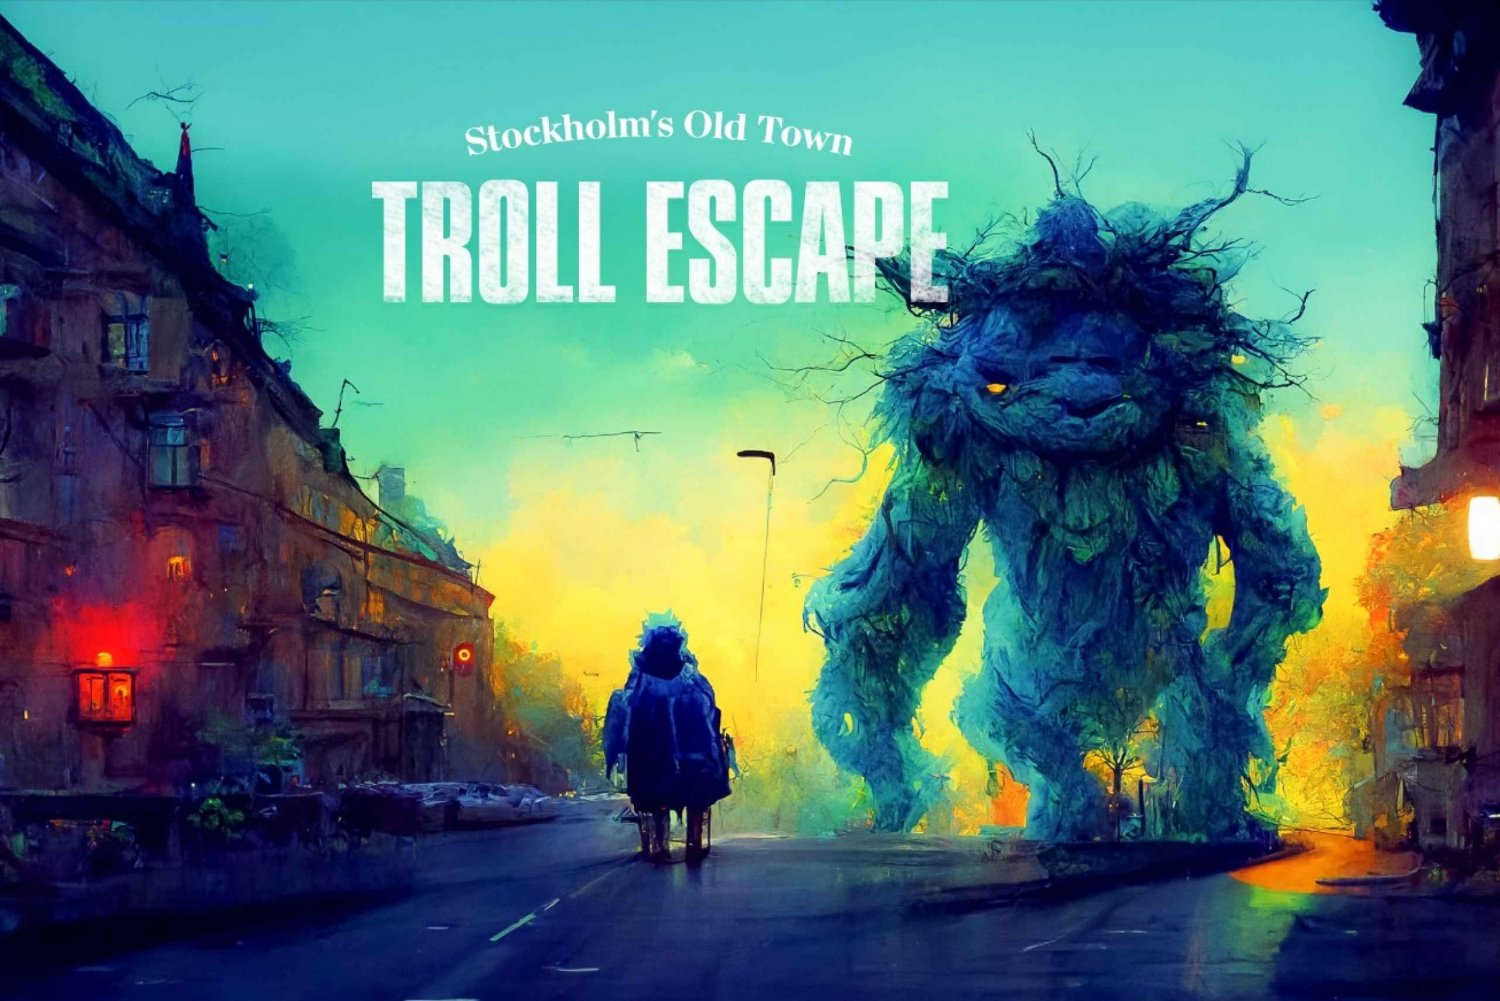 Vieille ville de Stockholm : la quête de l'évasion des trolls